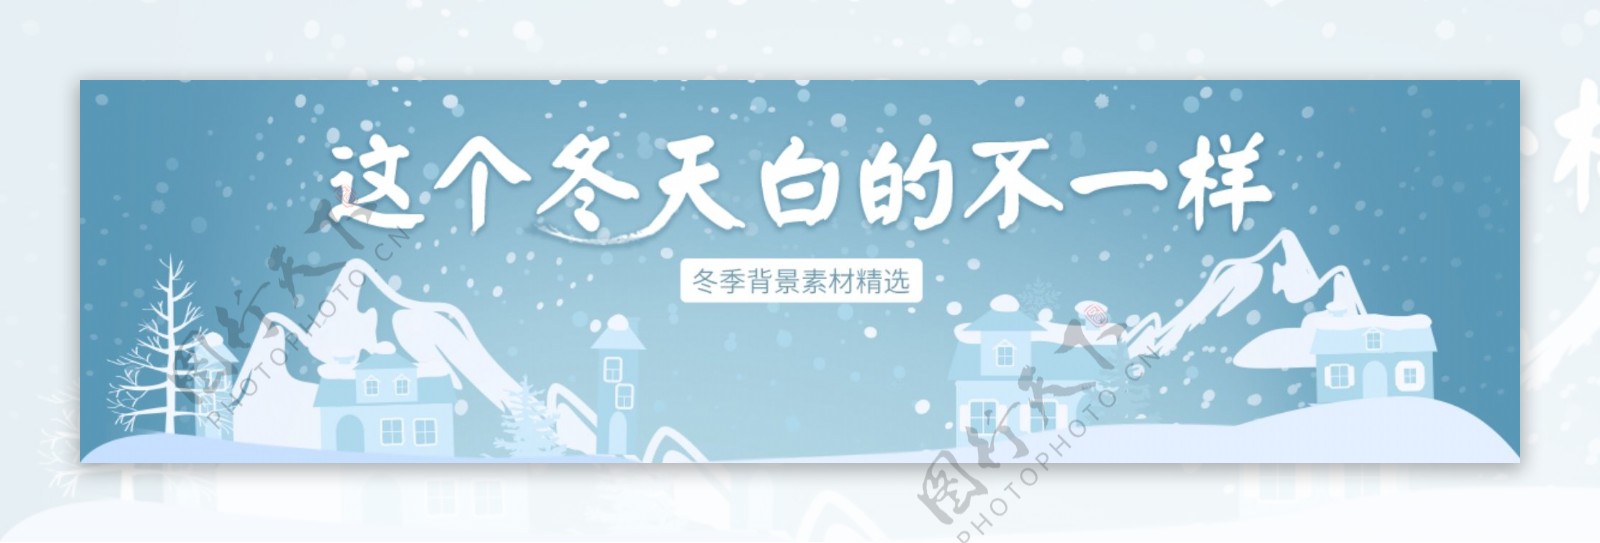 冬天宣传冬天元素雪banner